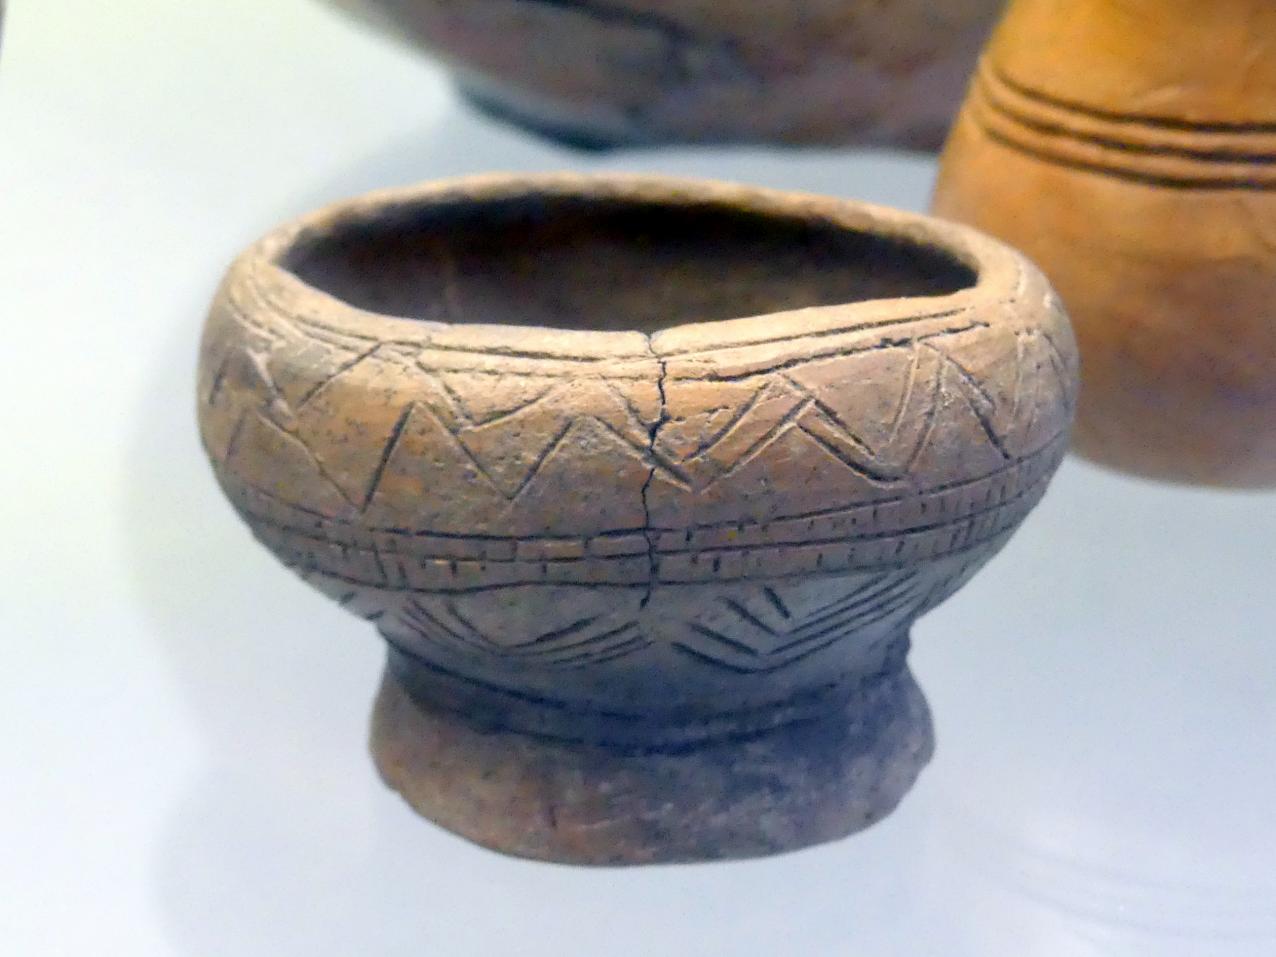 Fußschale mit gewölbtem Gefäßkörper, Frühe Bronzezeit, 3365 - 1200 v. Chr.